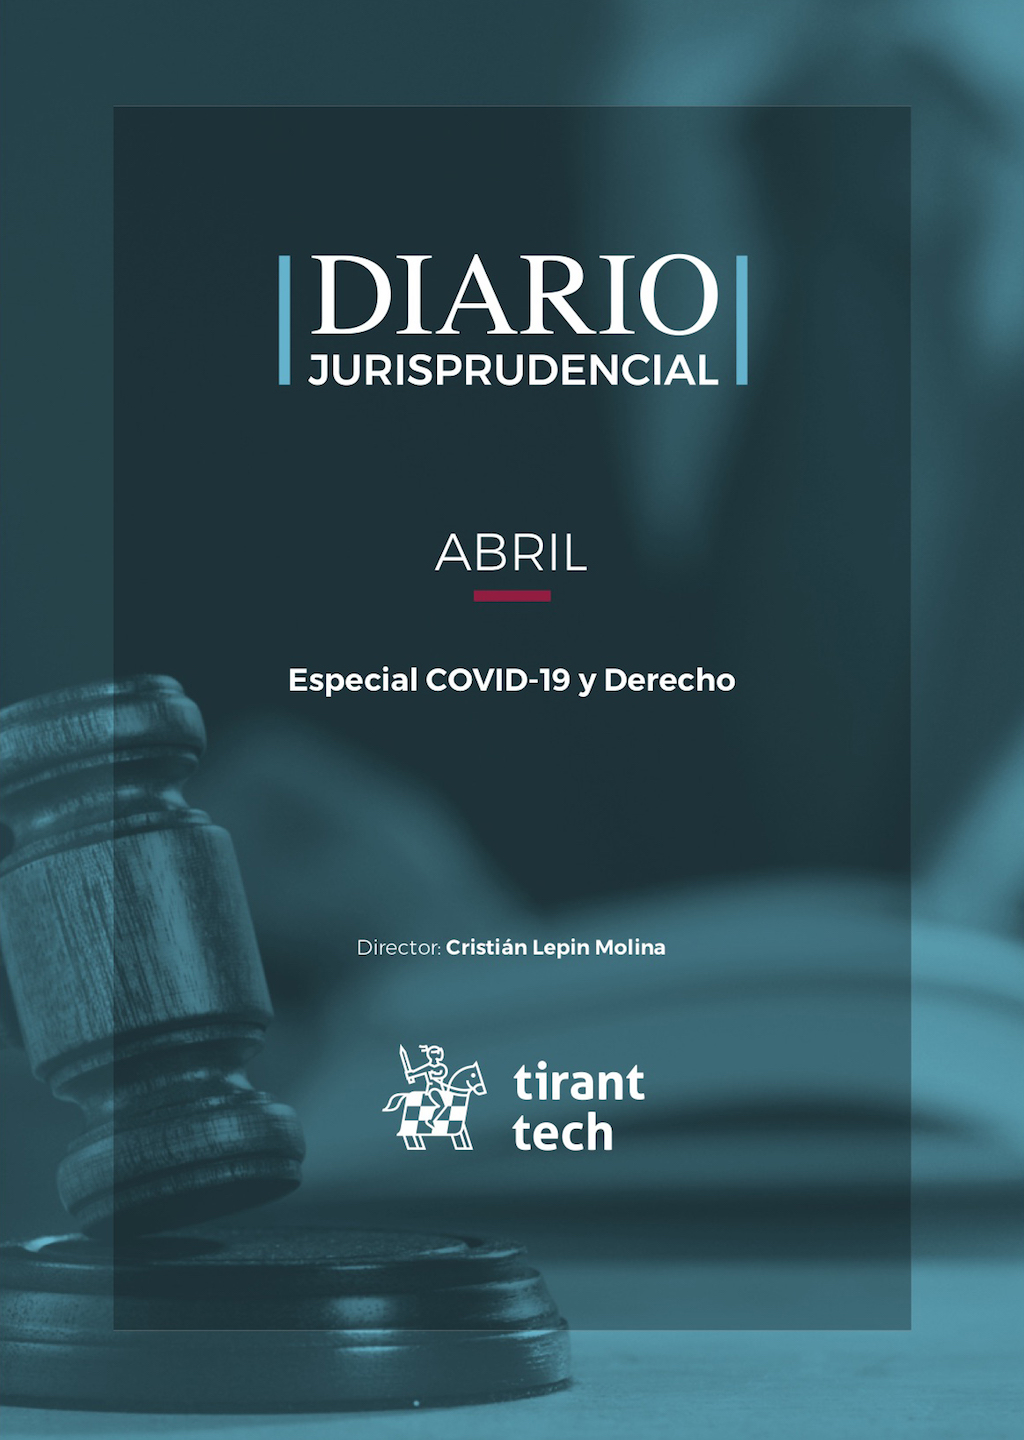 El Diario Juriprudencial ha publicado su segundo número en el mes de abril, y que corresponde a un especial Covid-19 y Derecho.